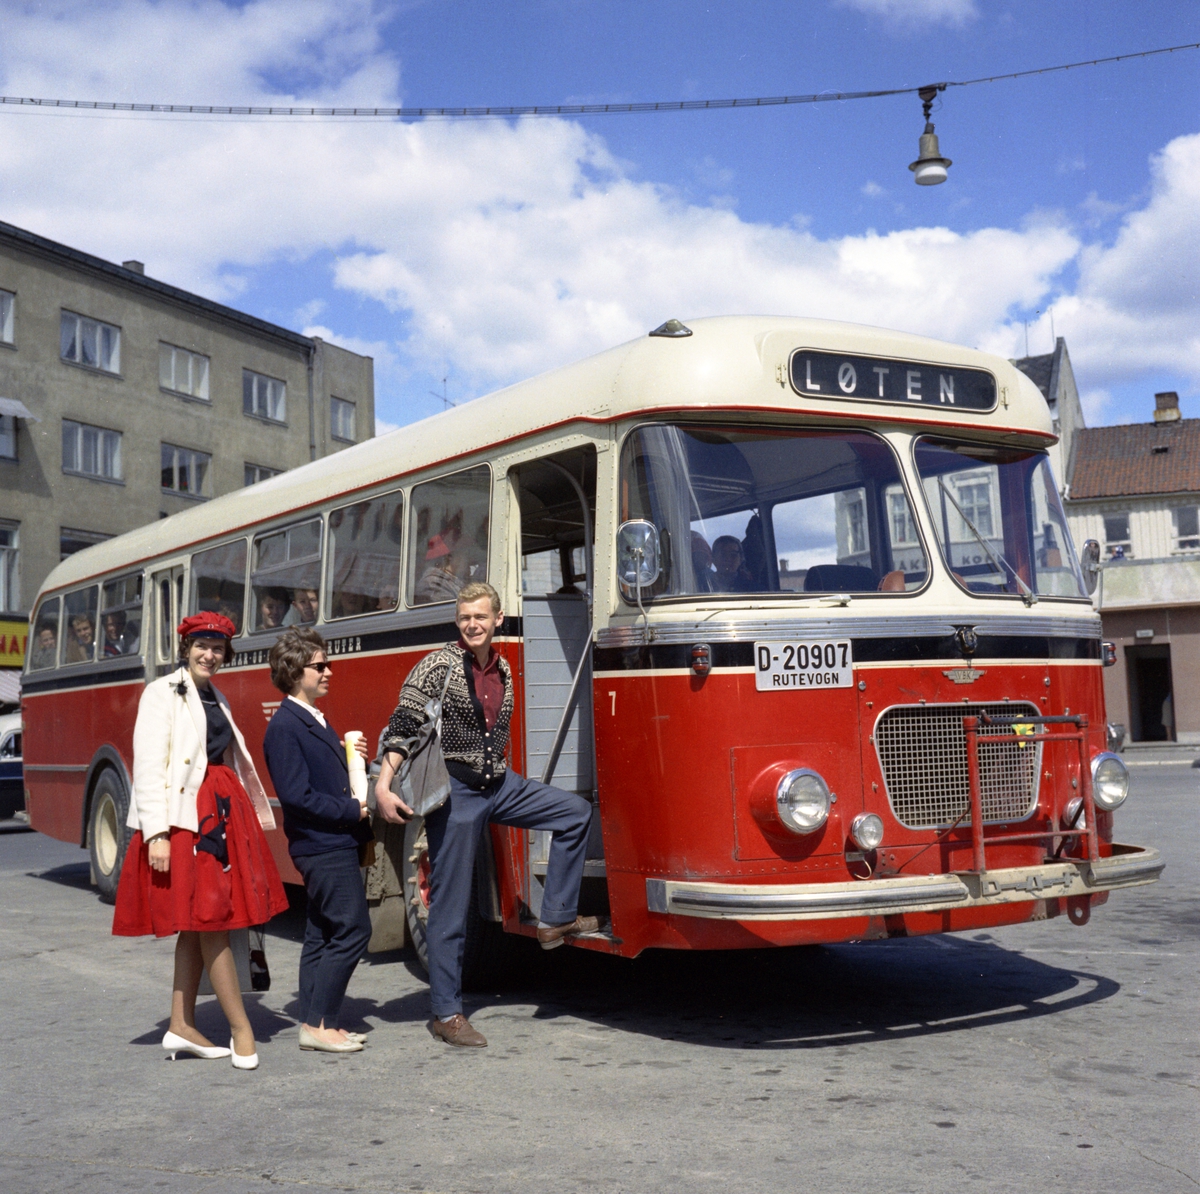 Hamar og Omland Bilruter. Buss på Østre Torg i Hamar. D-20907. "Løten-bussen" Russejente. Foto Normann mai-juli 1961. 
Opptak for Vestfold karosserifabrikk. 